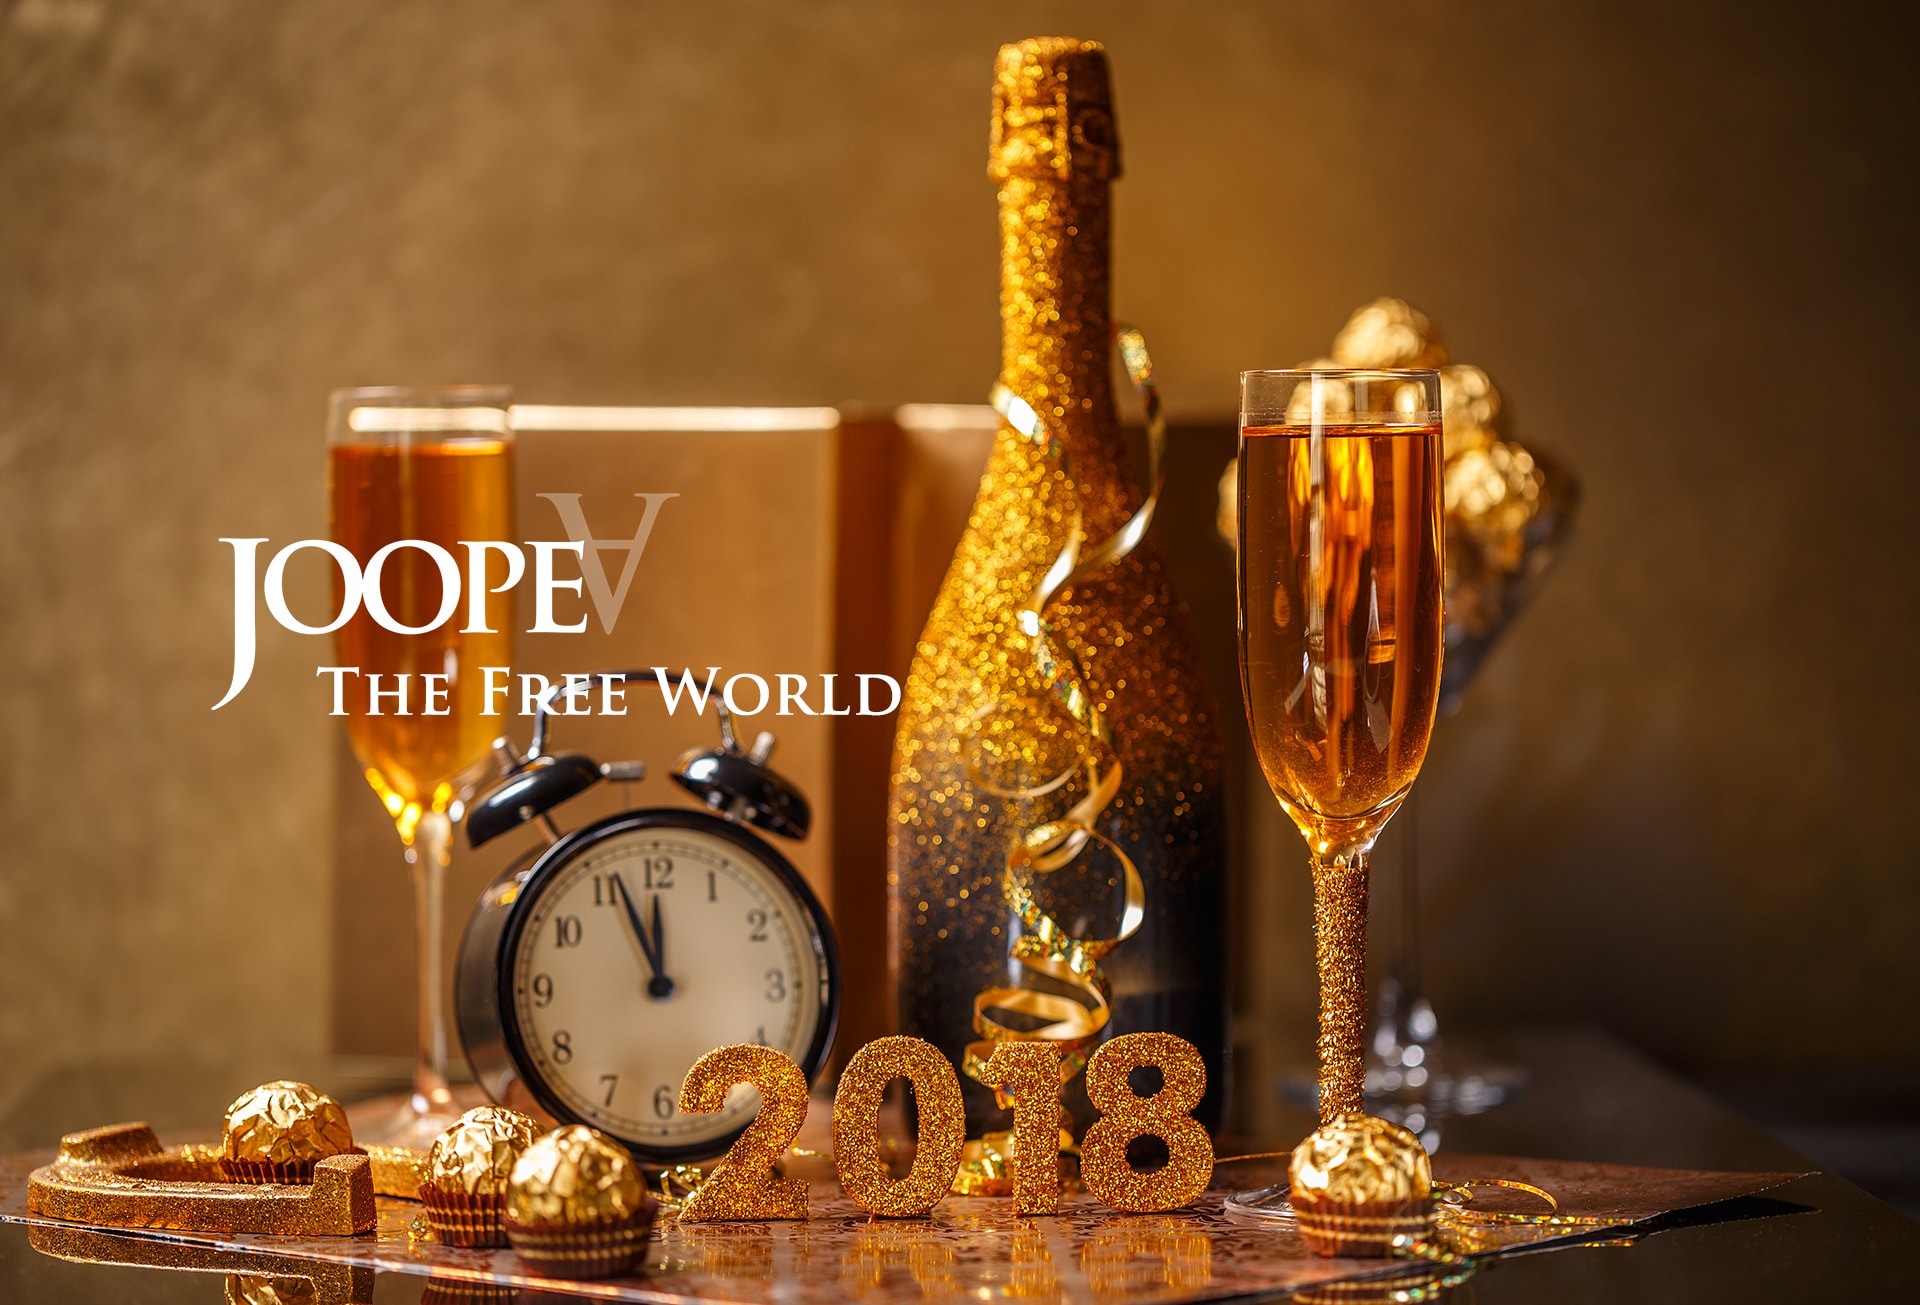 Happy holidays 2017-2018 from JoopeA